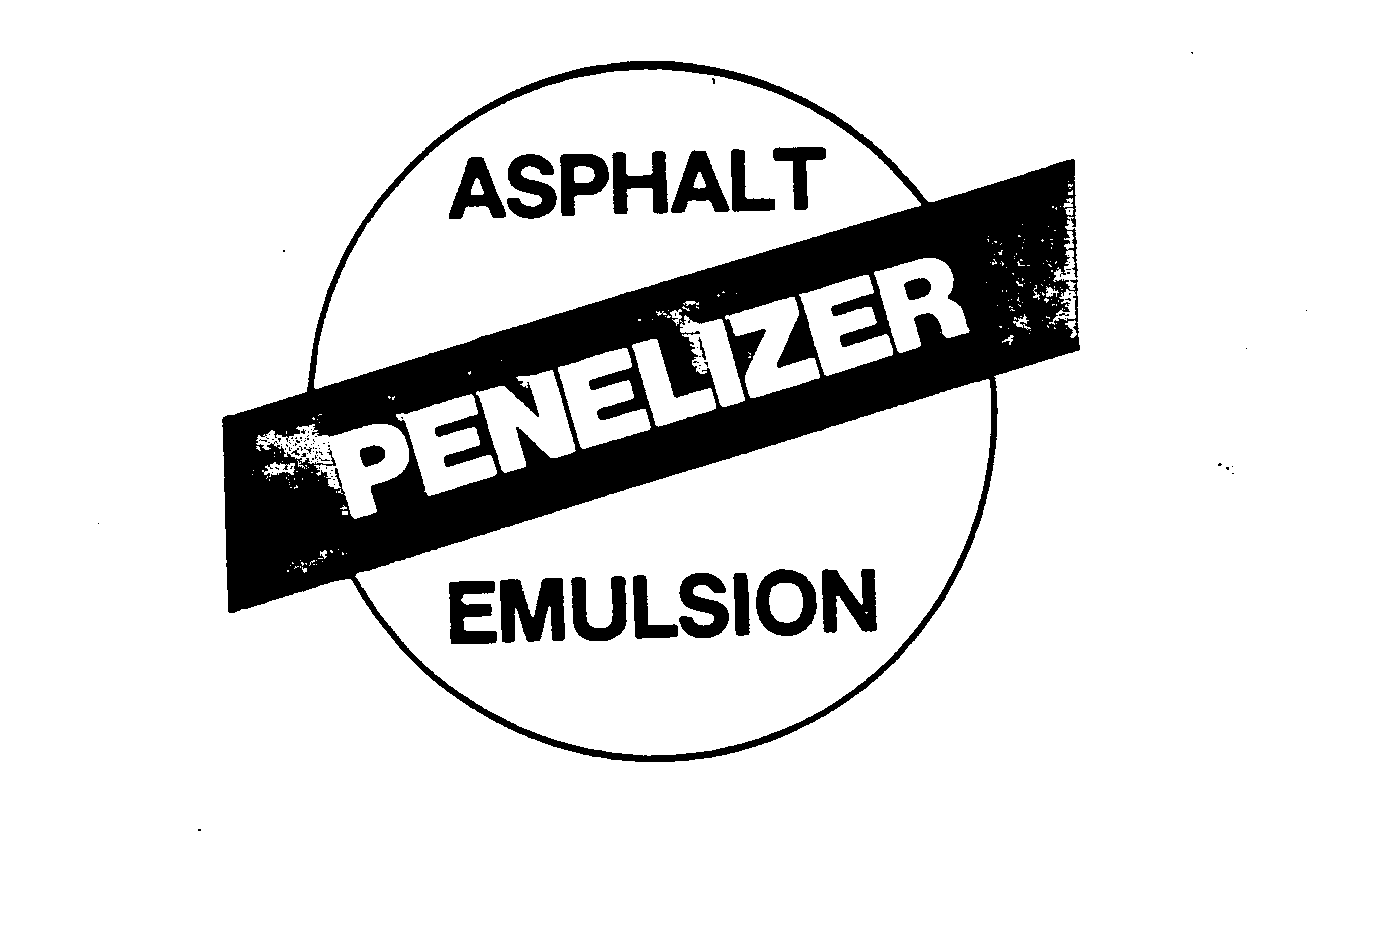  ASPHALT PENELIZER EMULSION